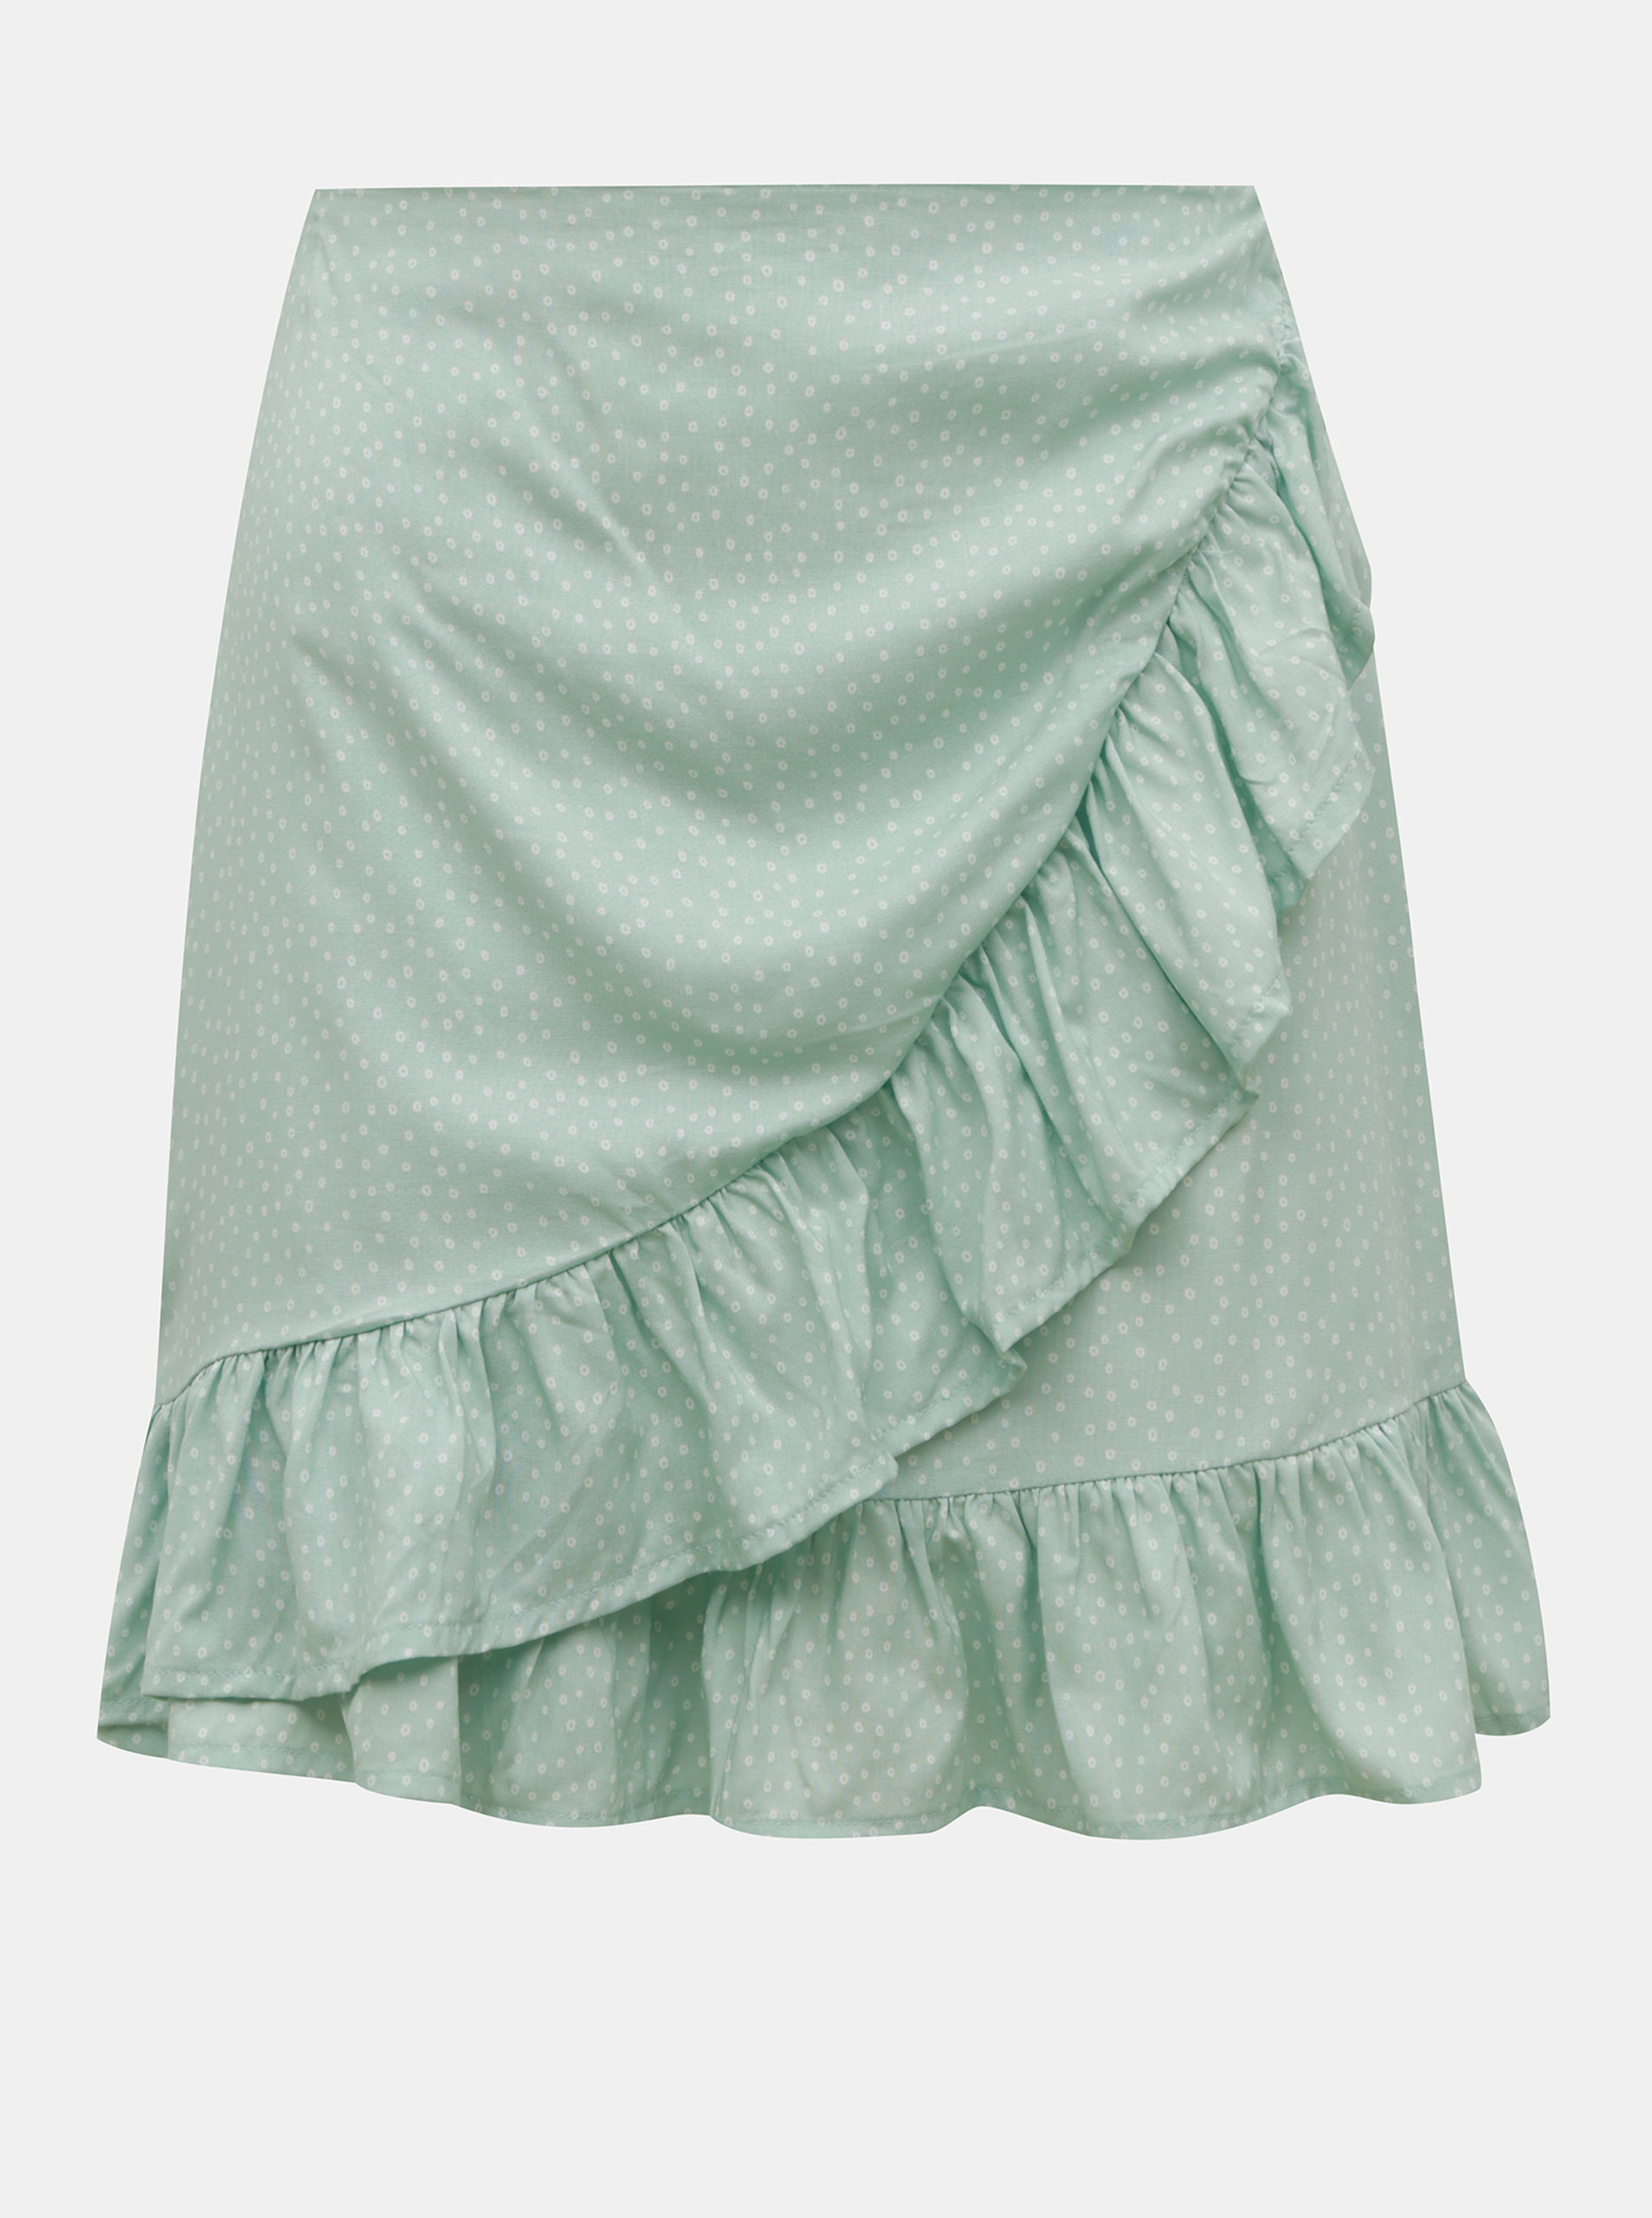 Světle zelená vzorovaná sukně s volánem TALLY WEiJL